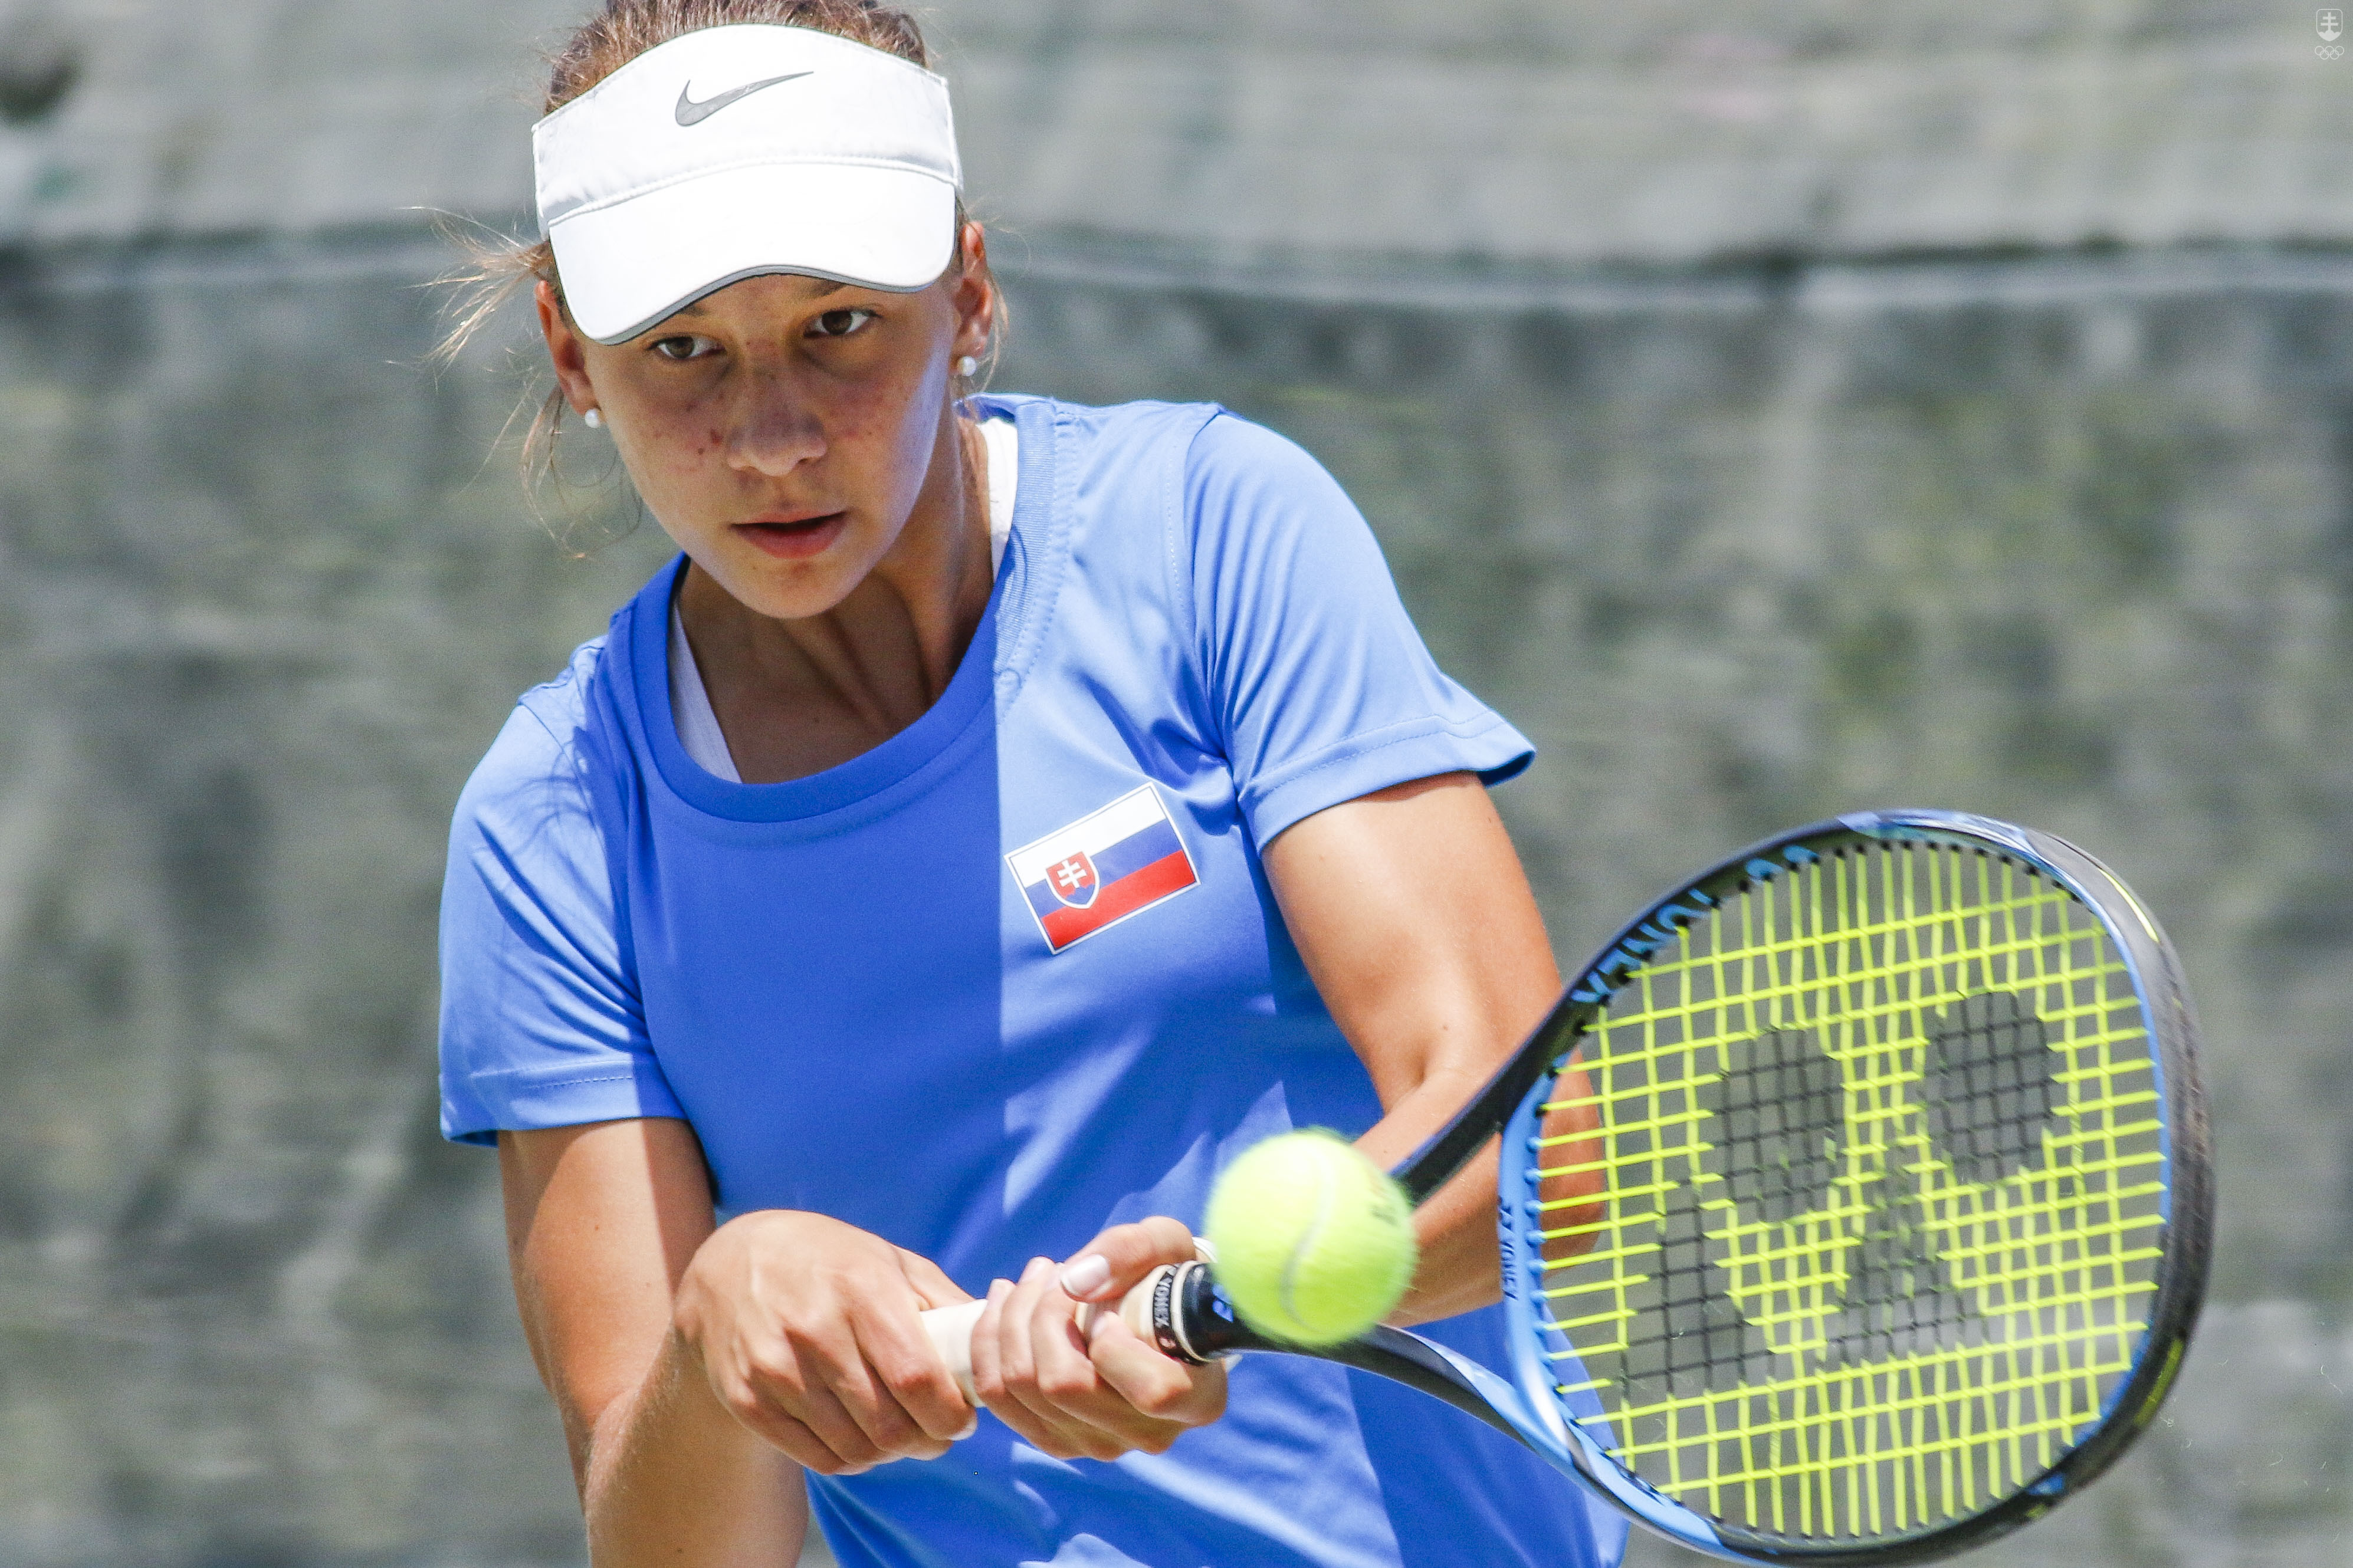 Tenistka Salma Drugdová sa vo dvojhre prebojovala medzi najlepšiu osmičku tenistov na EYOF 2019 v Baku. 